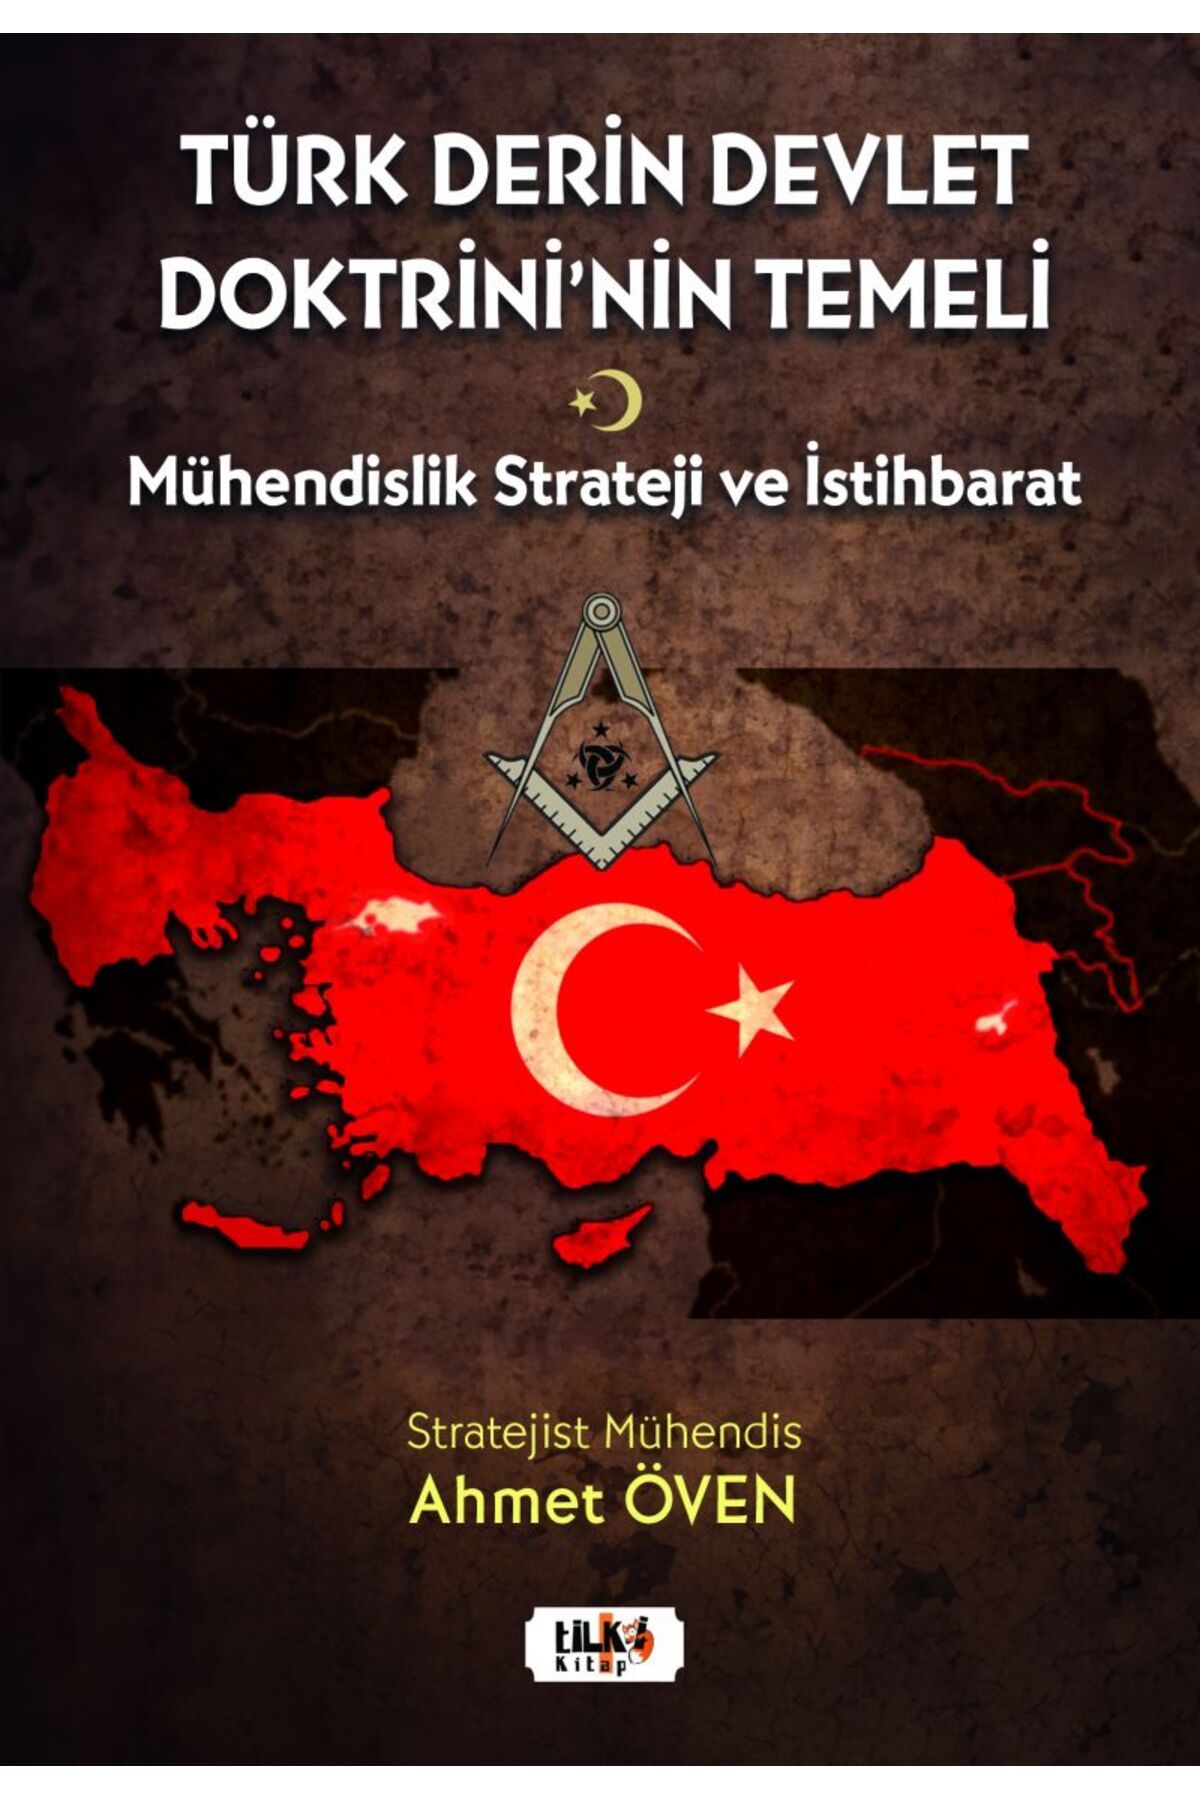 Tilki Kitap Türk Derin Devlet Doktrini'nin Temeli; Mühendislik Strateji Ve İstihbarat'ın Analitik Kombinasyonu V